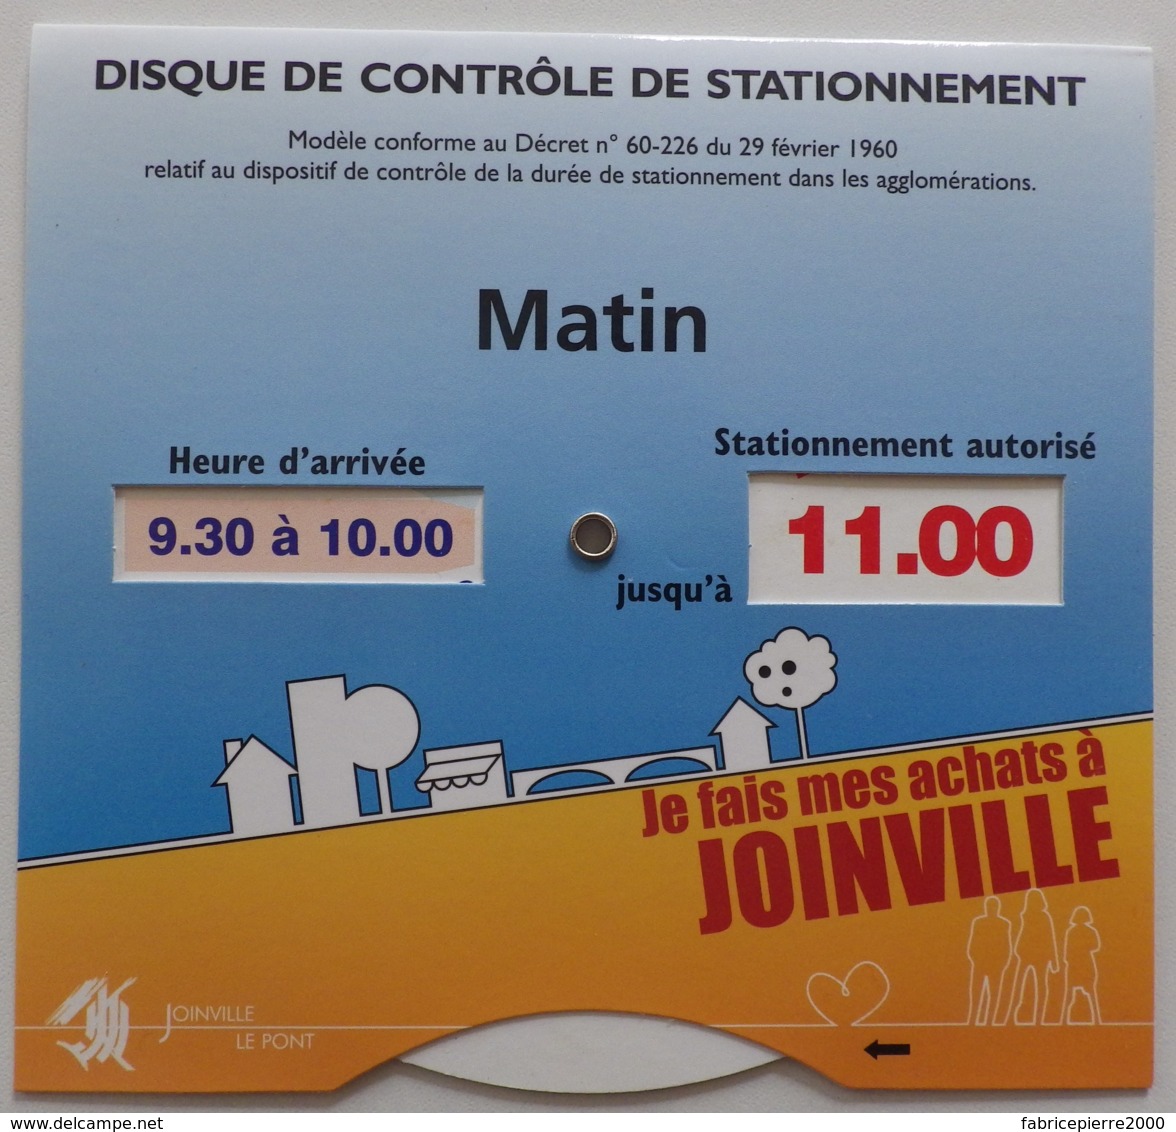 JOINVILLE-LE-PONT (94) - Disque De Contrôle De Stationnement - Etat Neuf - Cars